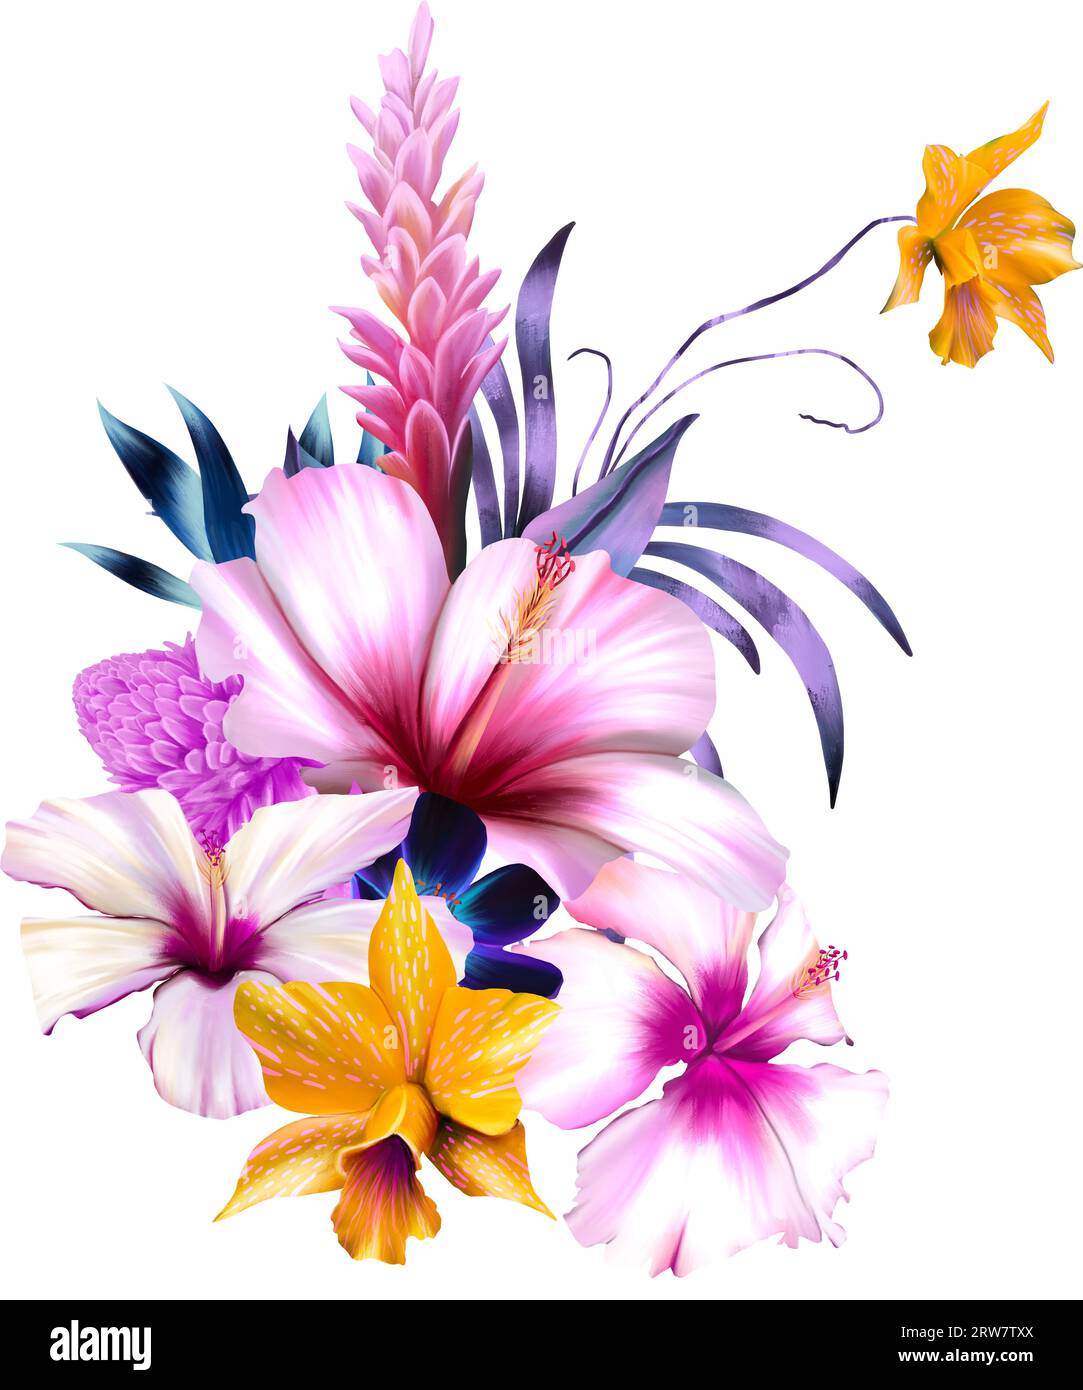 Tropical colourful floral arrangement Stock Photo